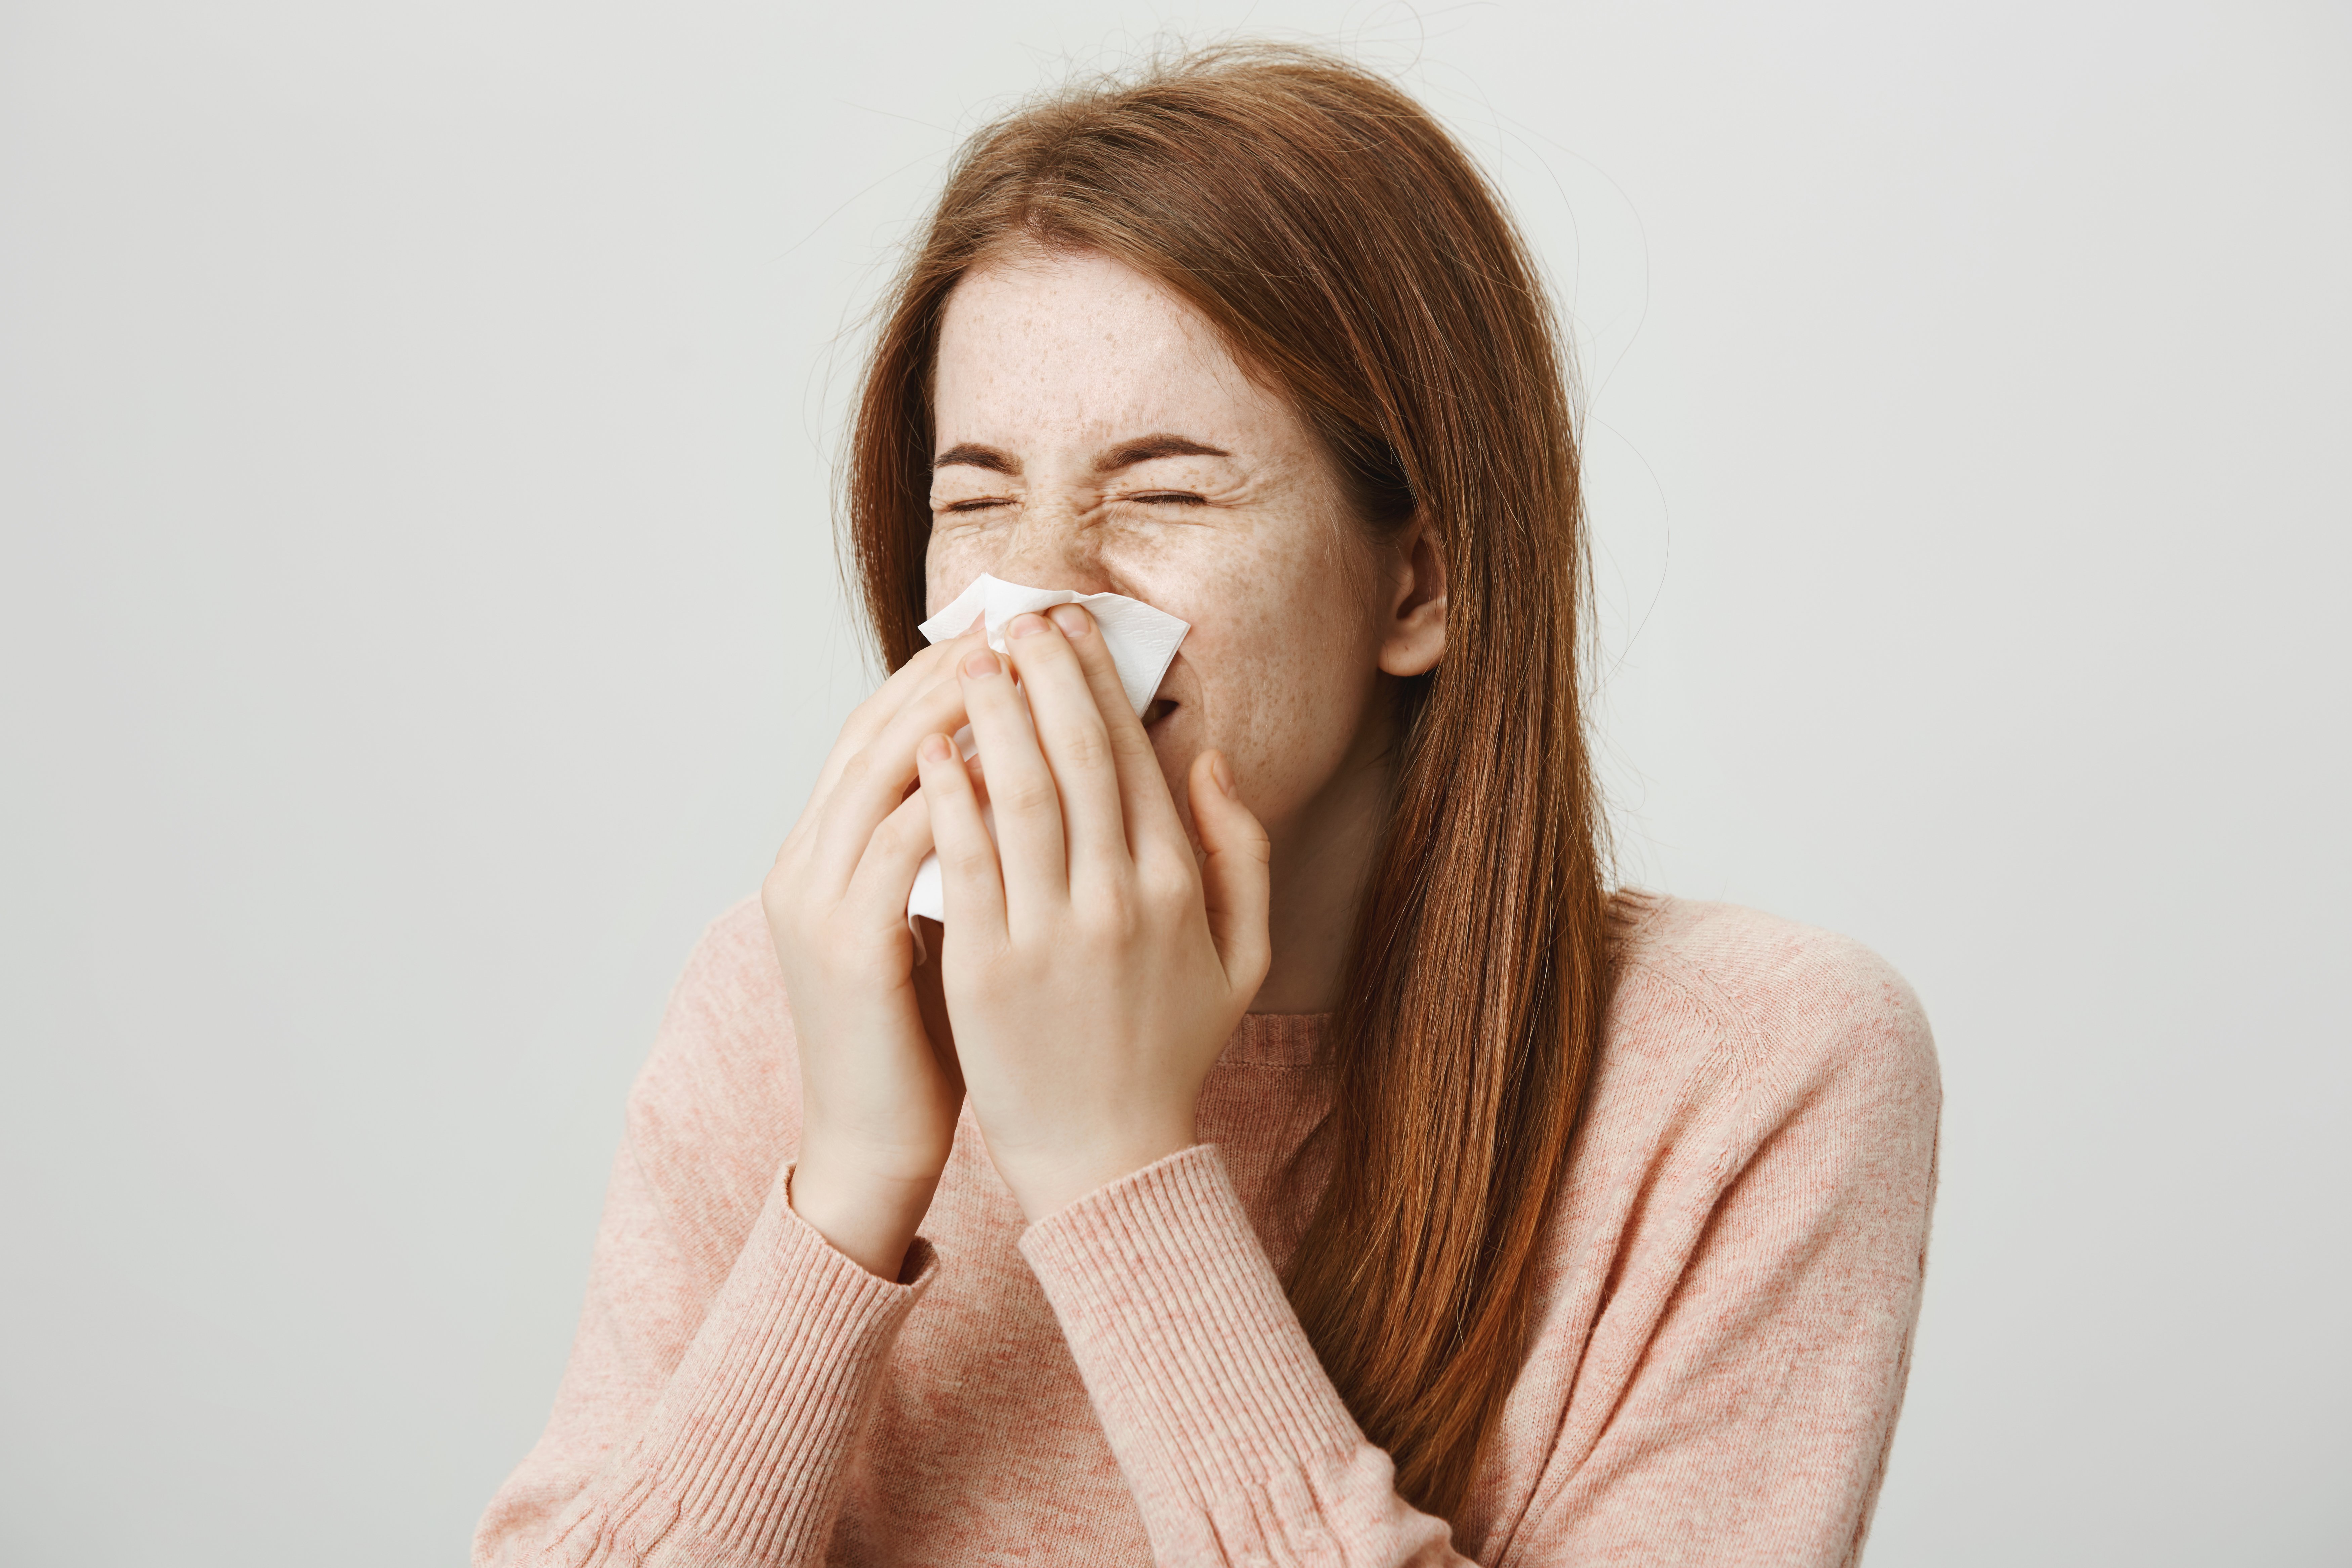 Os principais sintomas da gripe são coriza nasal, dor de garganta, dores nos músculos, febre e dor de cabeça. Confira as dicas para evitar pegar a doença